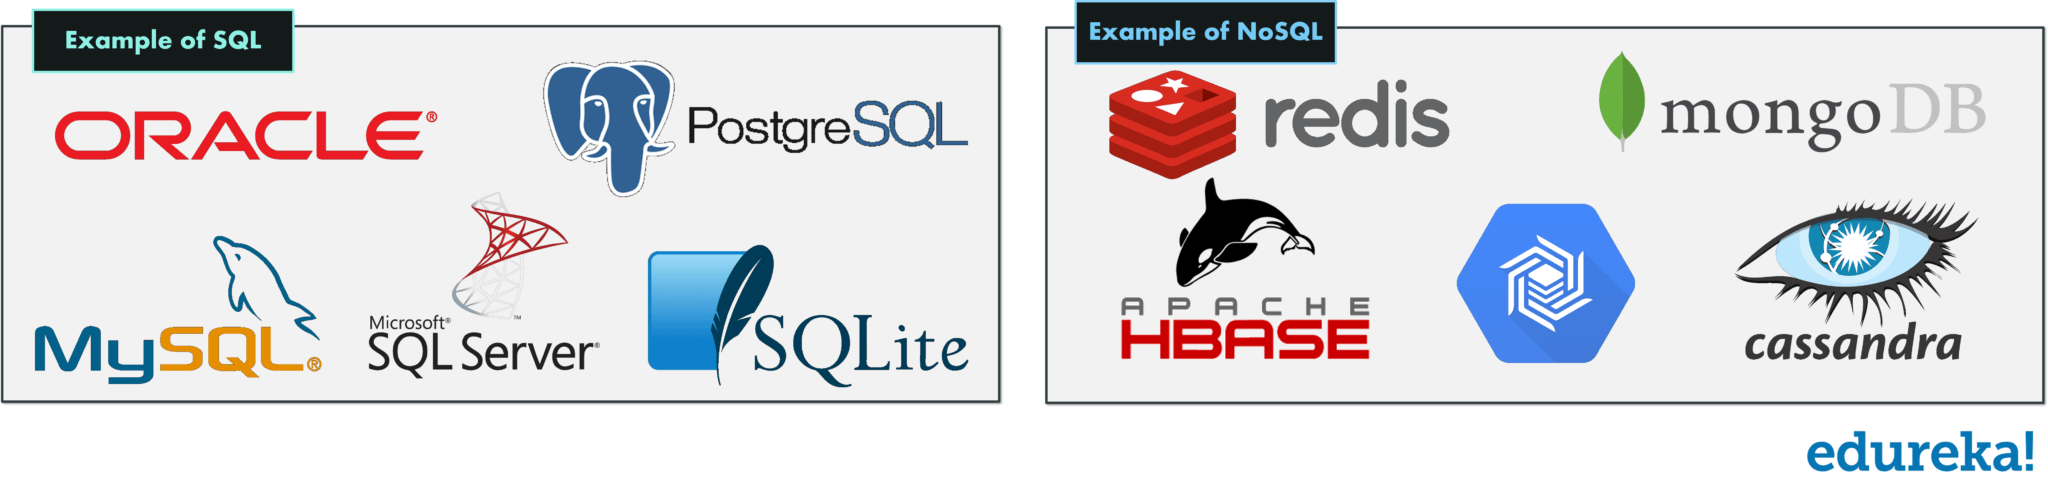 NoSQL Logo - SQL vs NoSQL Key Differences vs MongoDB